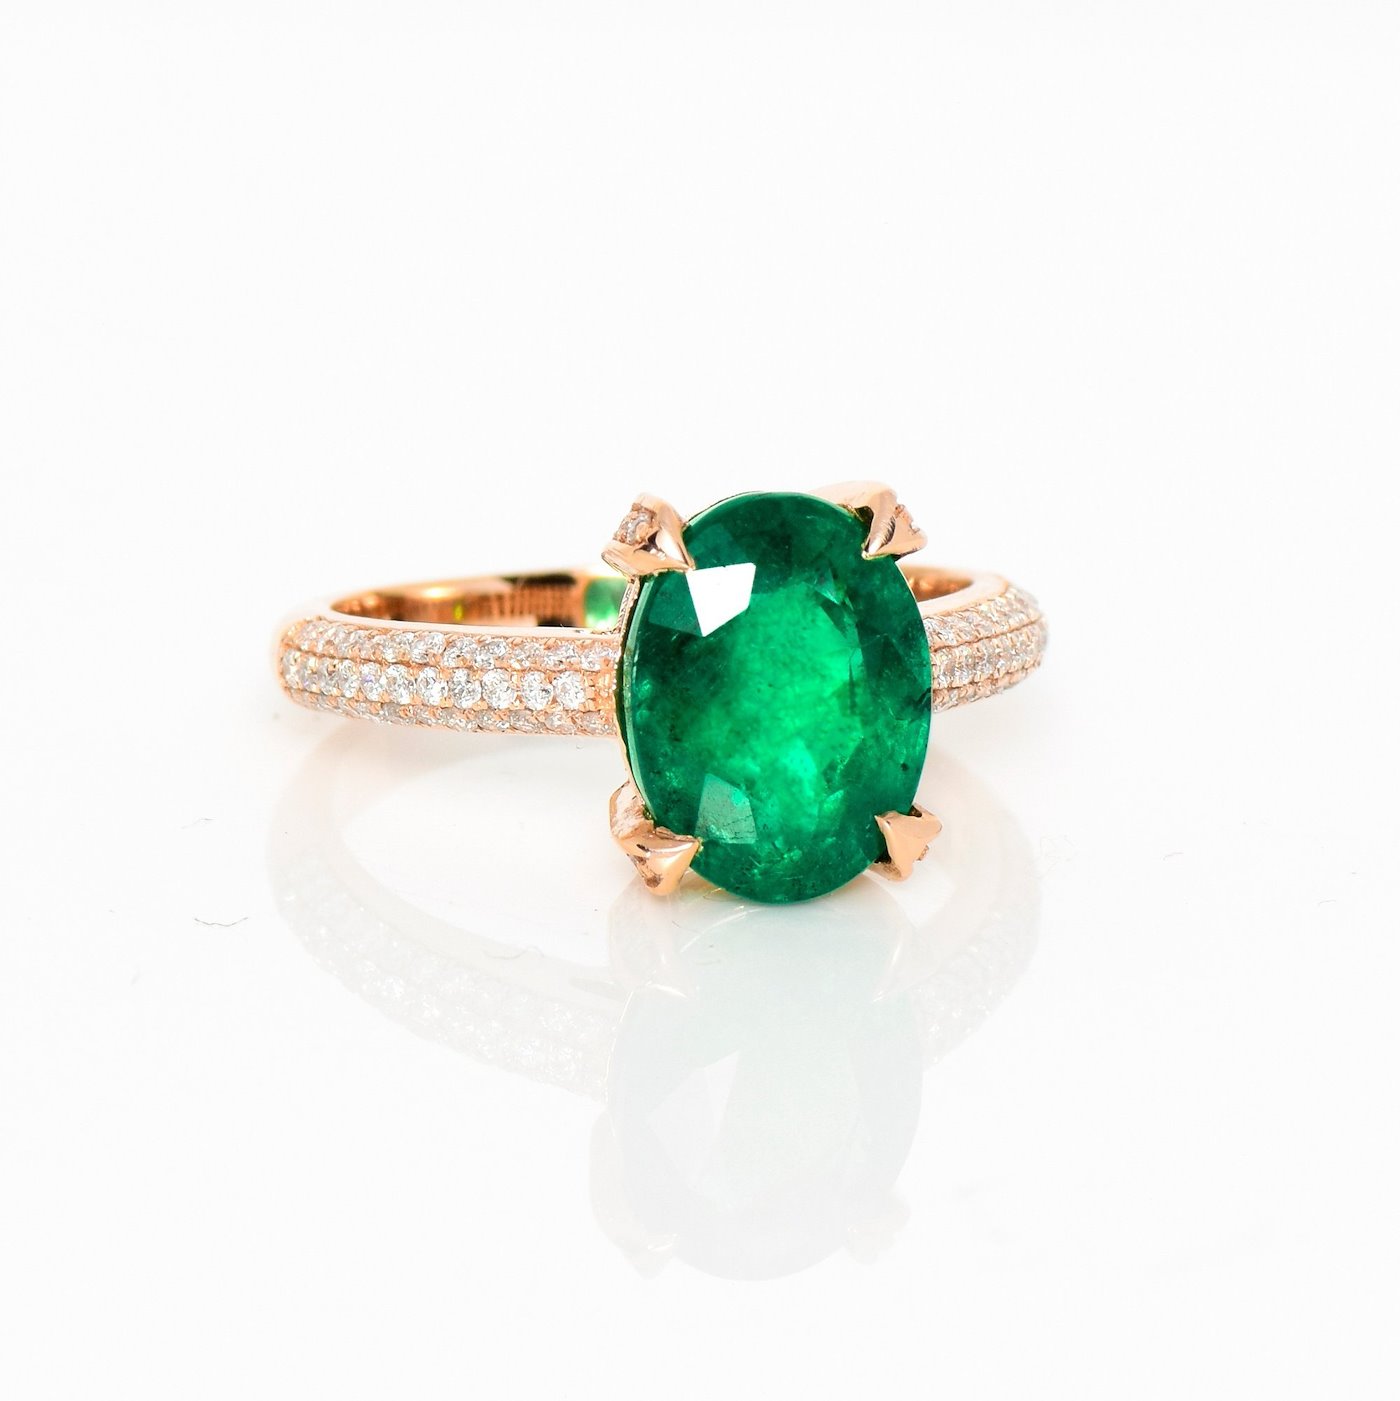 .. - Luxusní prsten s 3,09 ct smaragdem a 0,38 ct diamanty, růžové zlato 585/1000, značeno platnou puncovní značkou "labuť", hrubá hmotnost 3,90 g